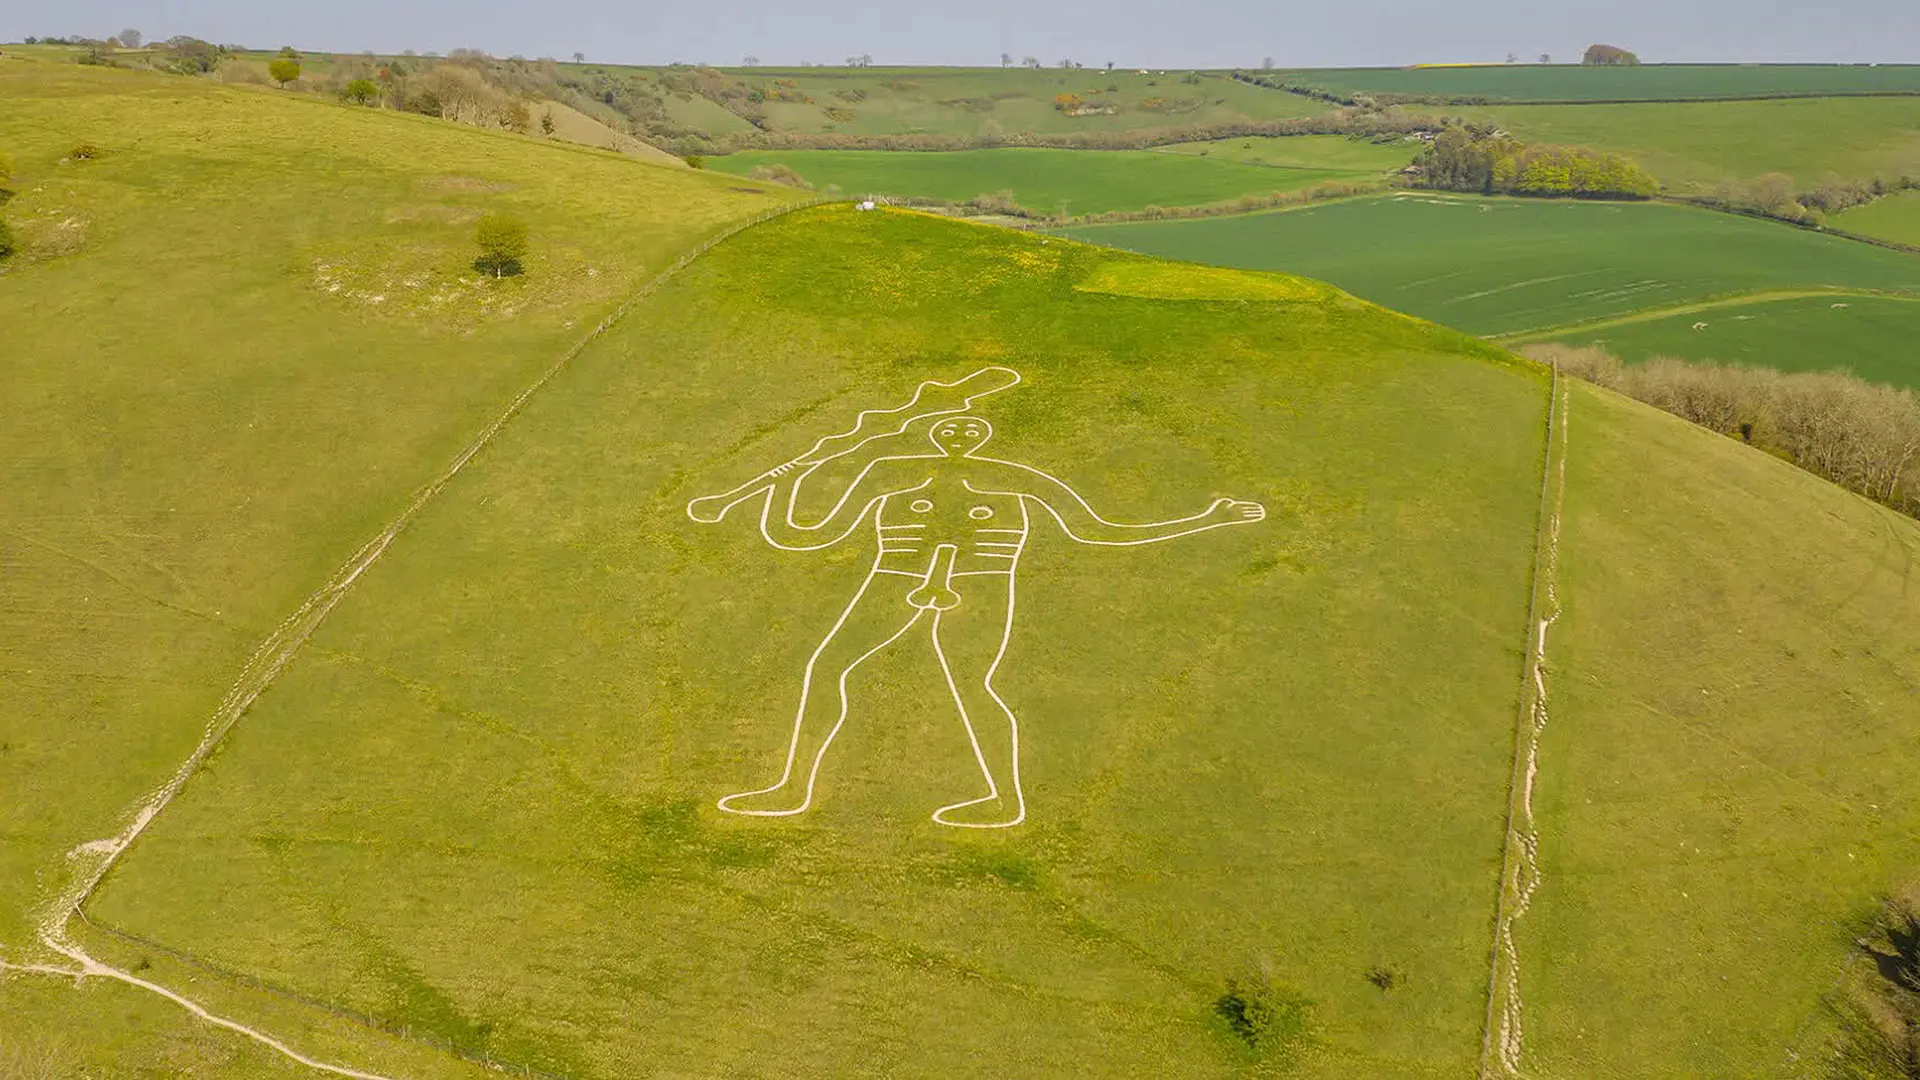 La fecha de datación del gigante de Cerne Abbas sorprendió. Esta enorme figura desnuda fue tallada en la ladera de una colina de Dorset en la Alta Edad Media